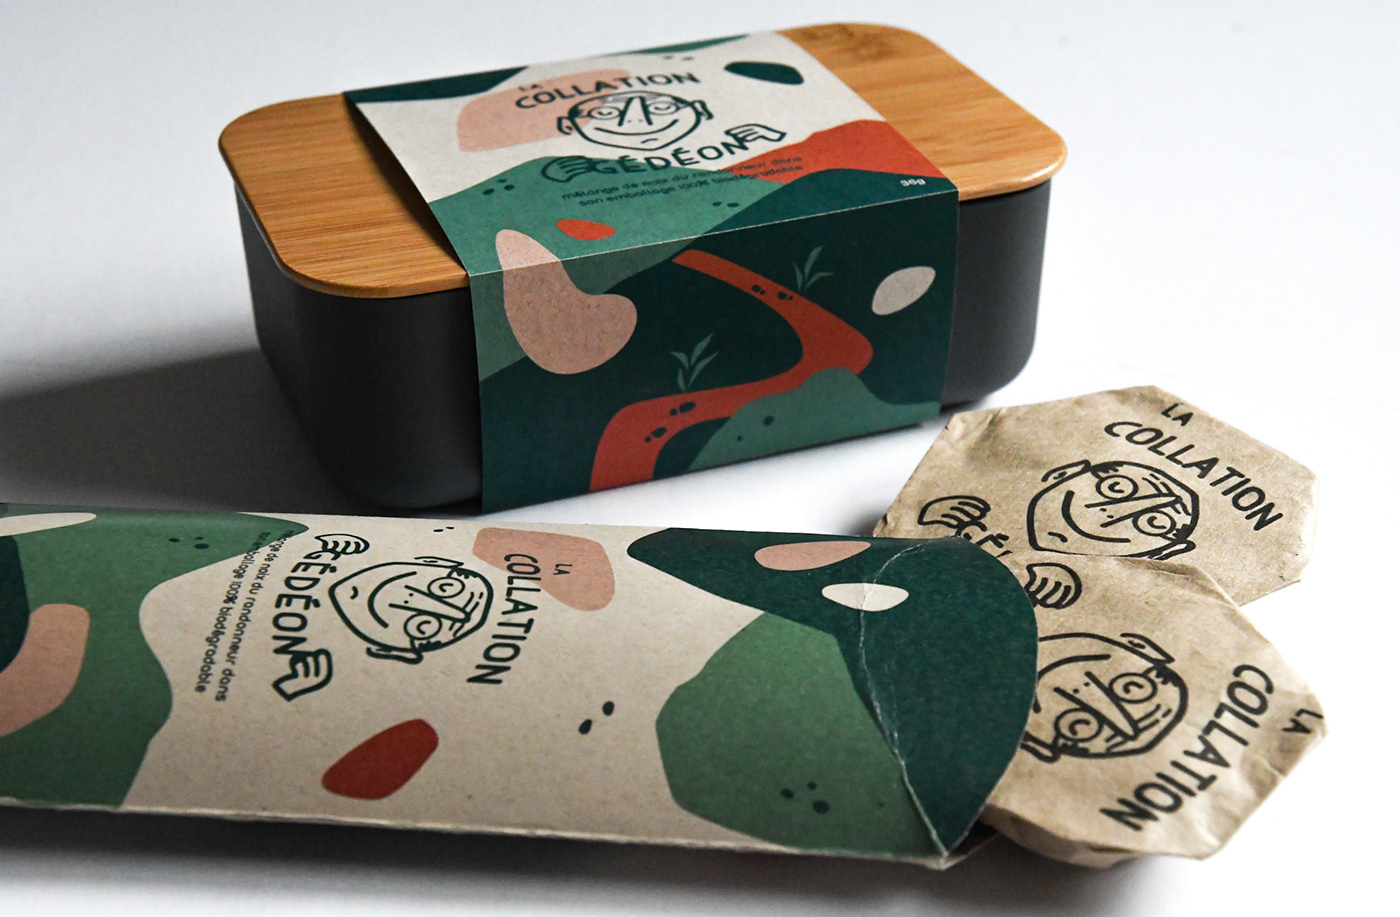 Packaging example #550: Branding & Packaging - Snack Box